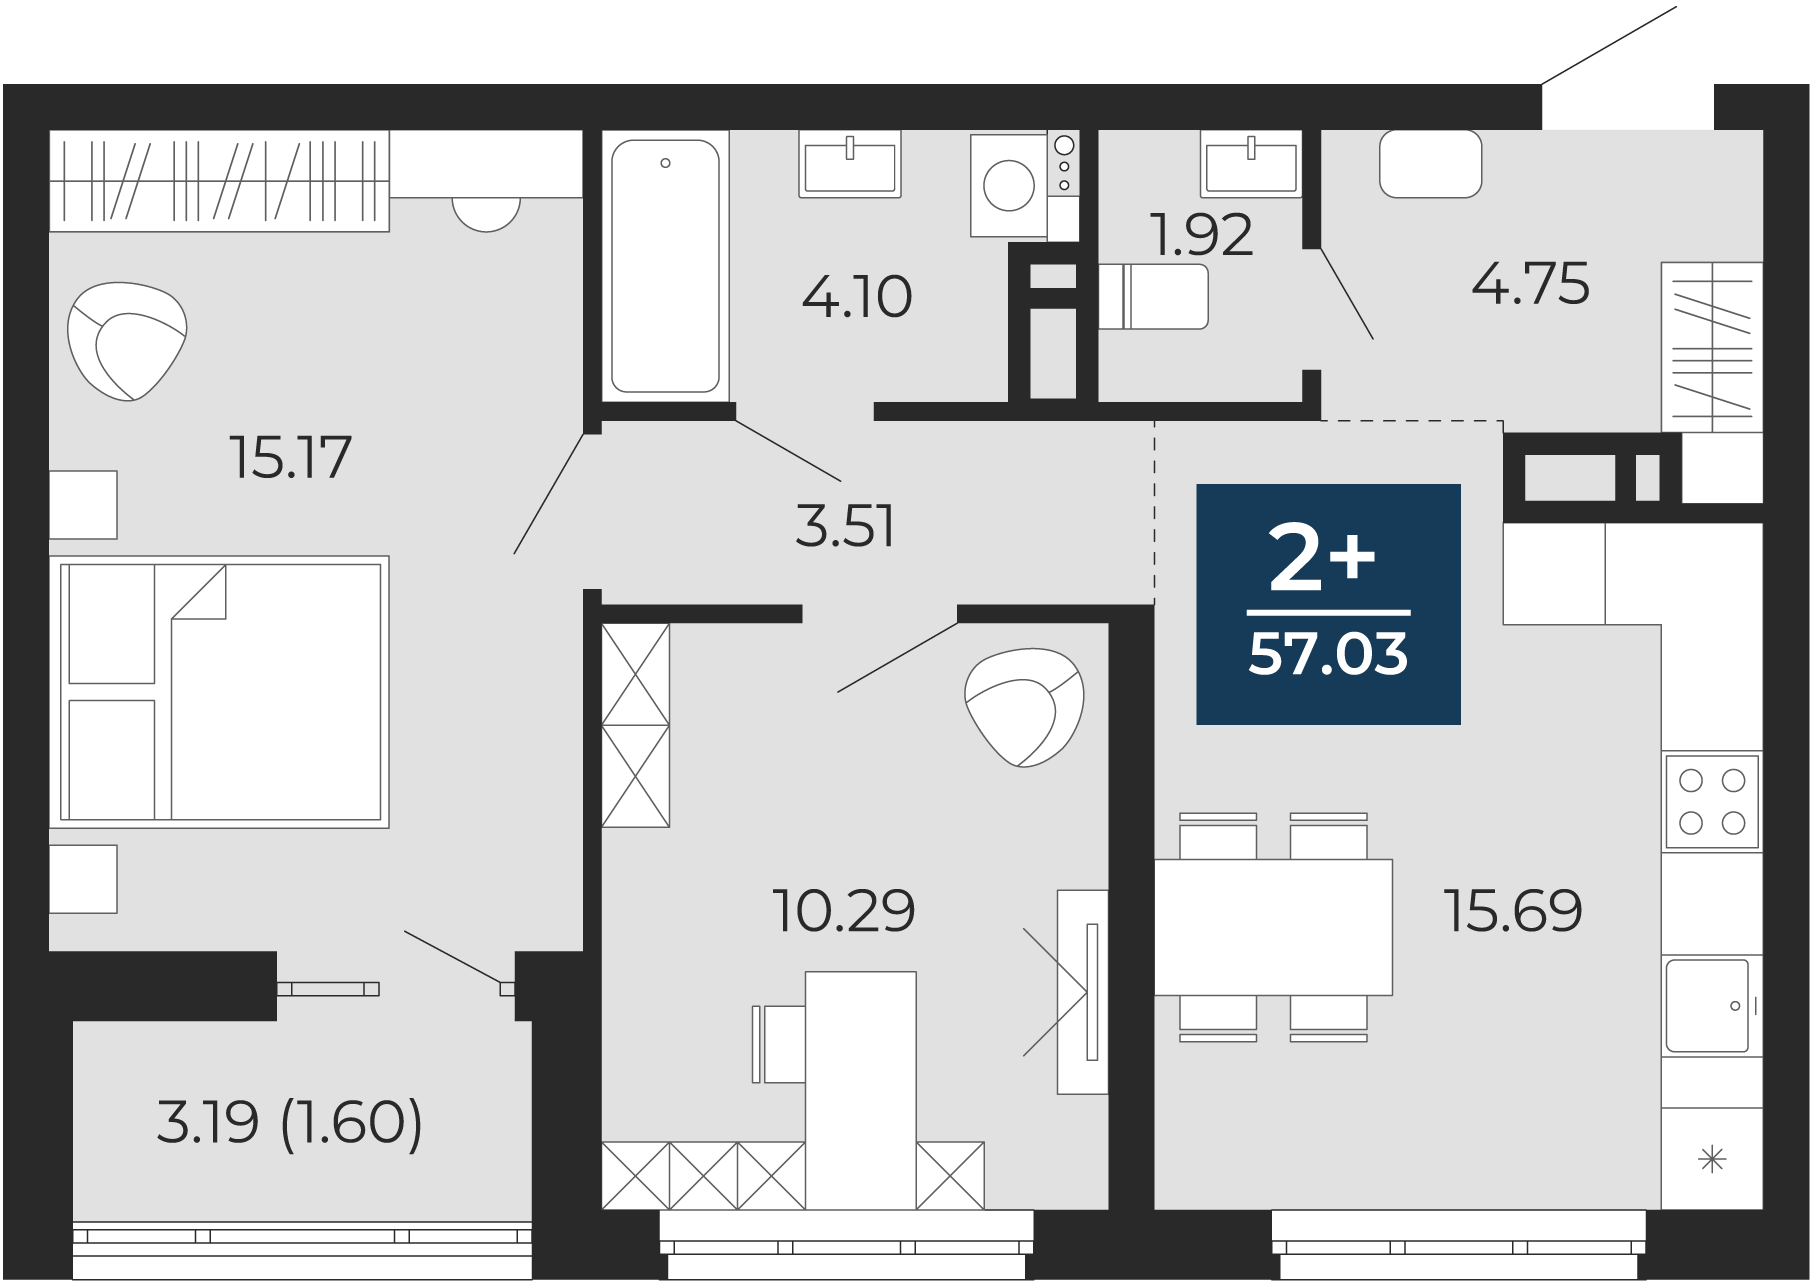 Квартира № 407, 2-комнатная, 57.03 кв. м, 11 этаж